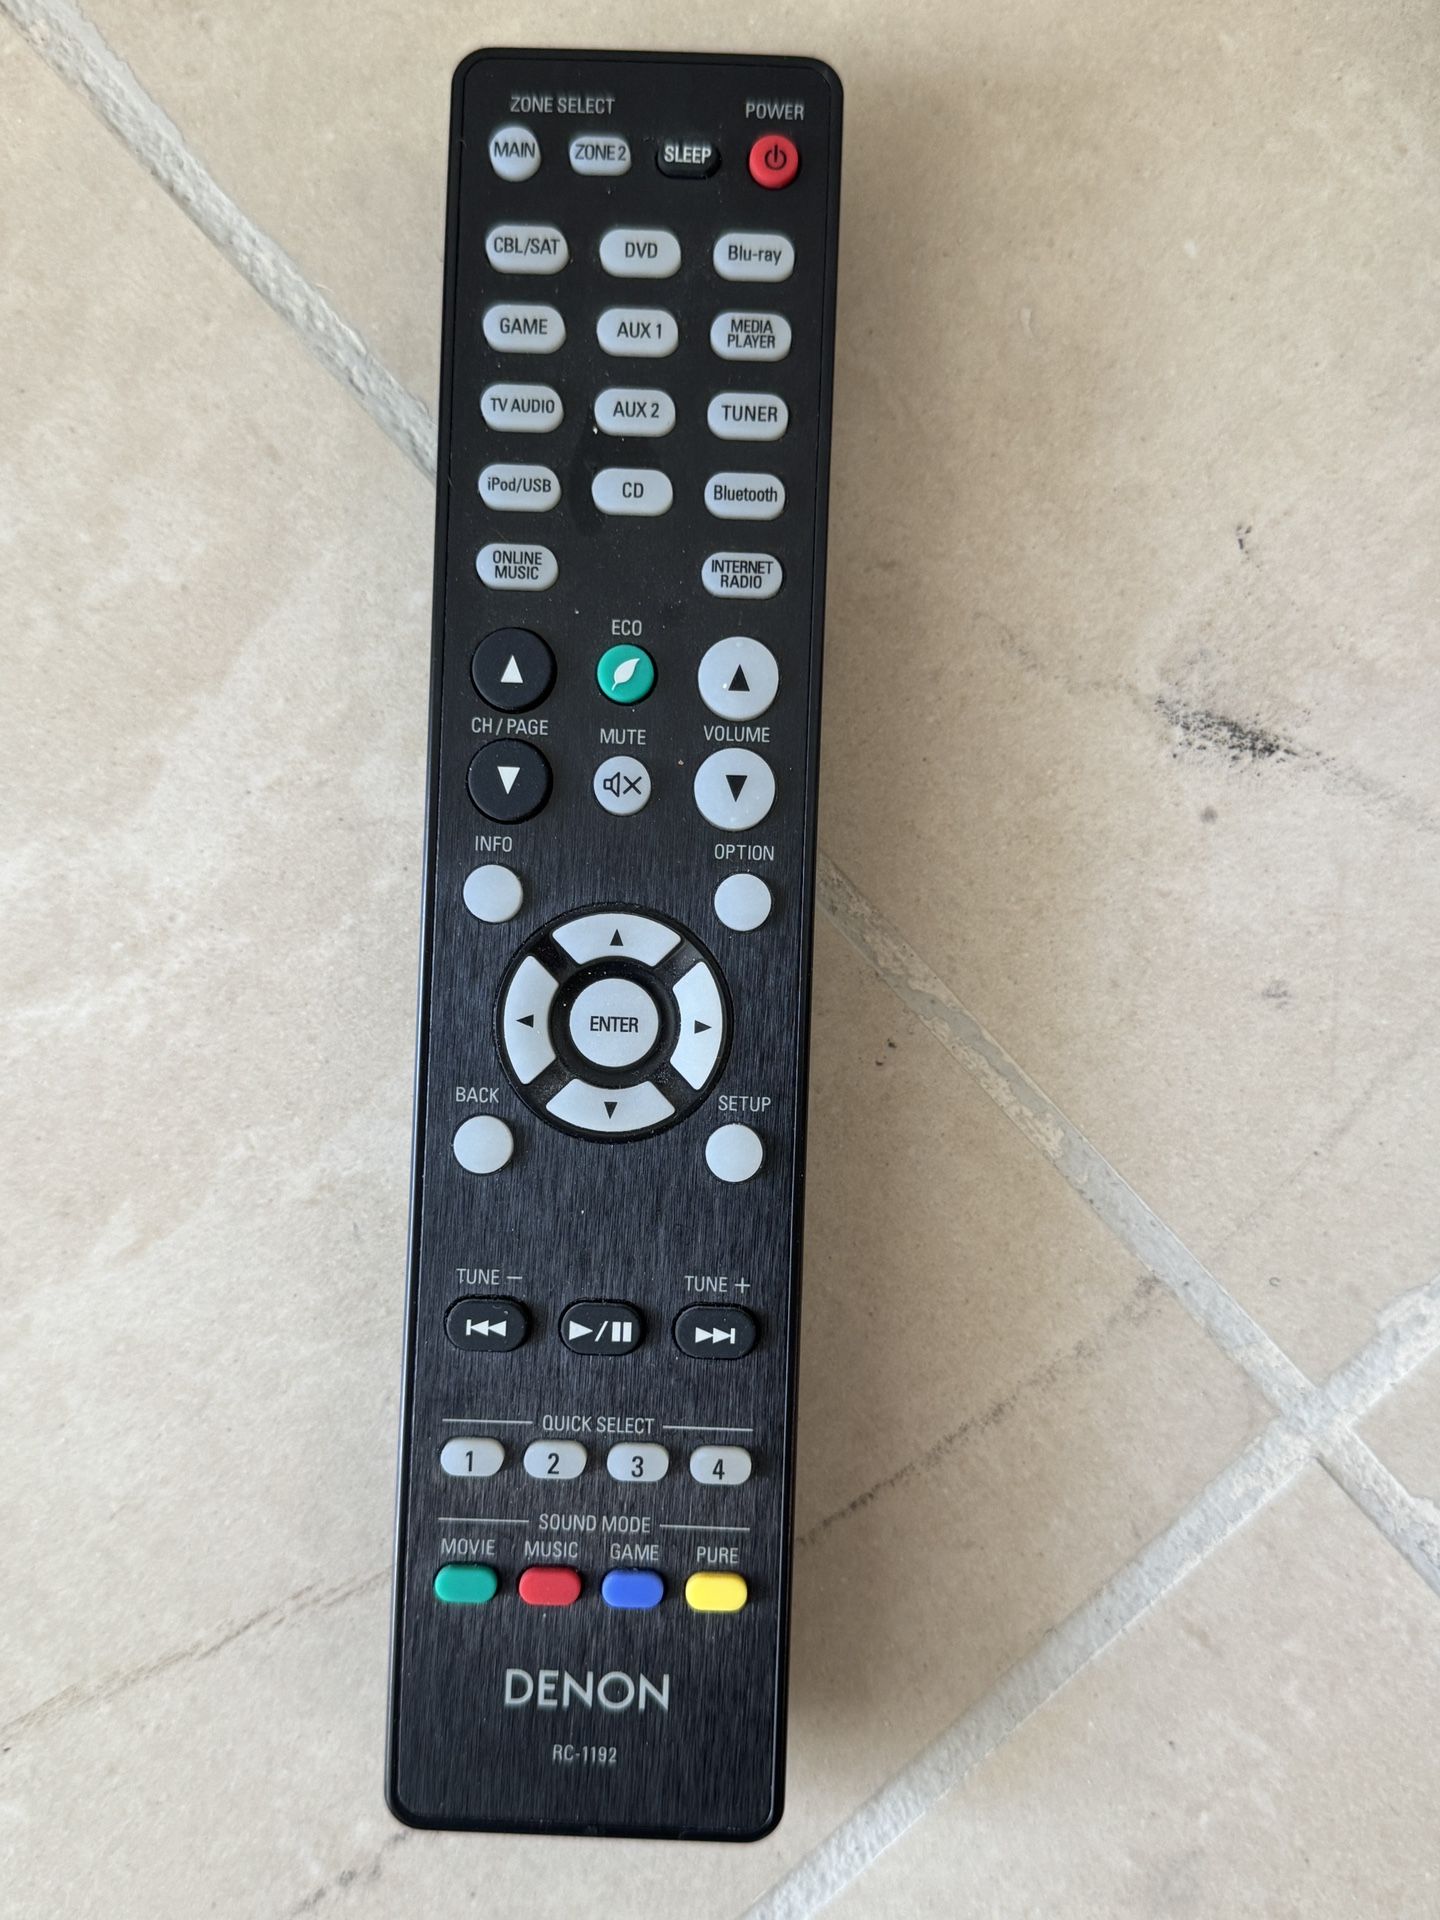 Denon AVR-X2200W 7.2 Channel Home Theater AV Receiver & Remote